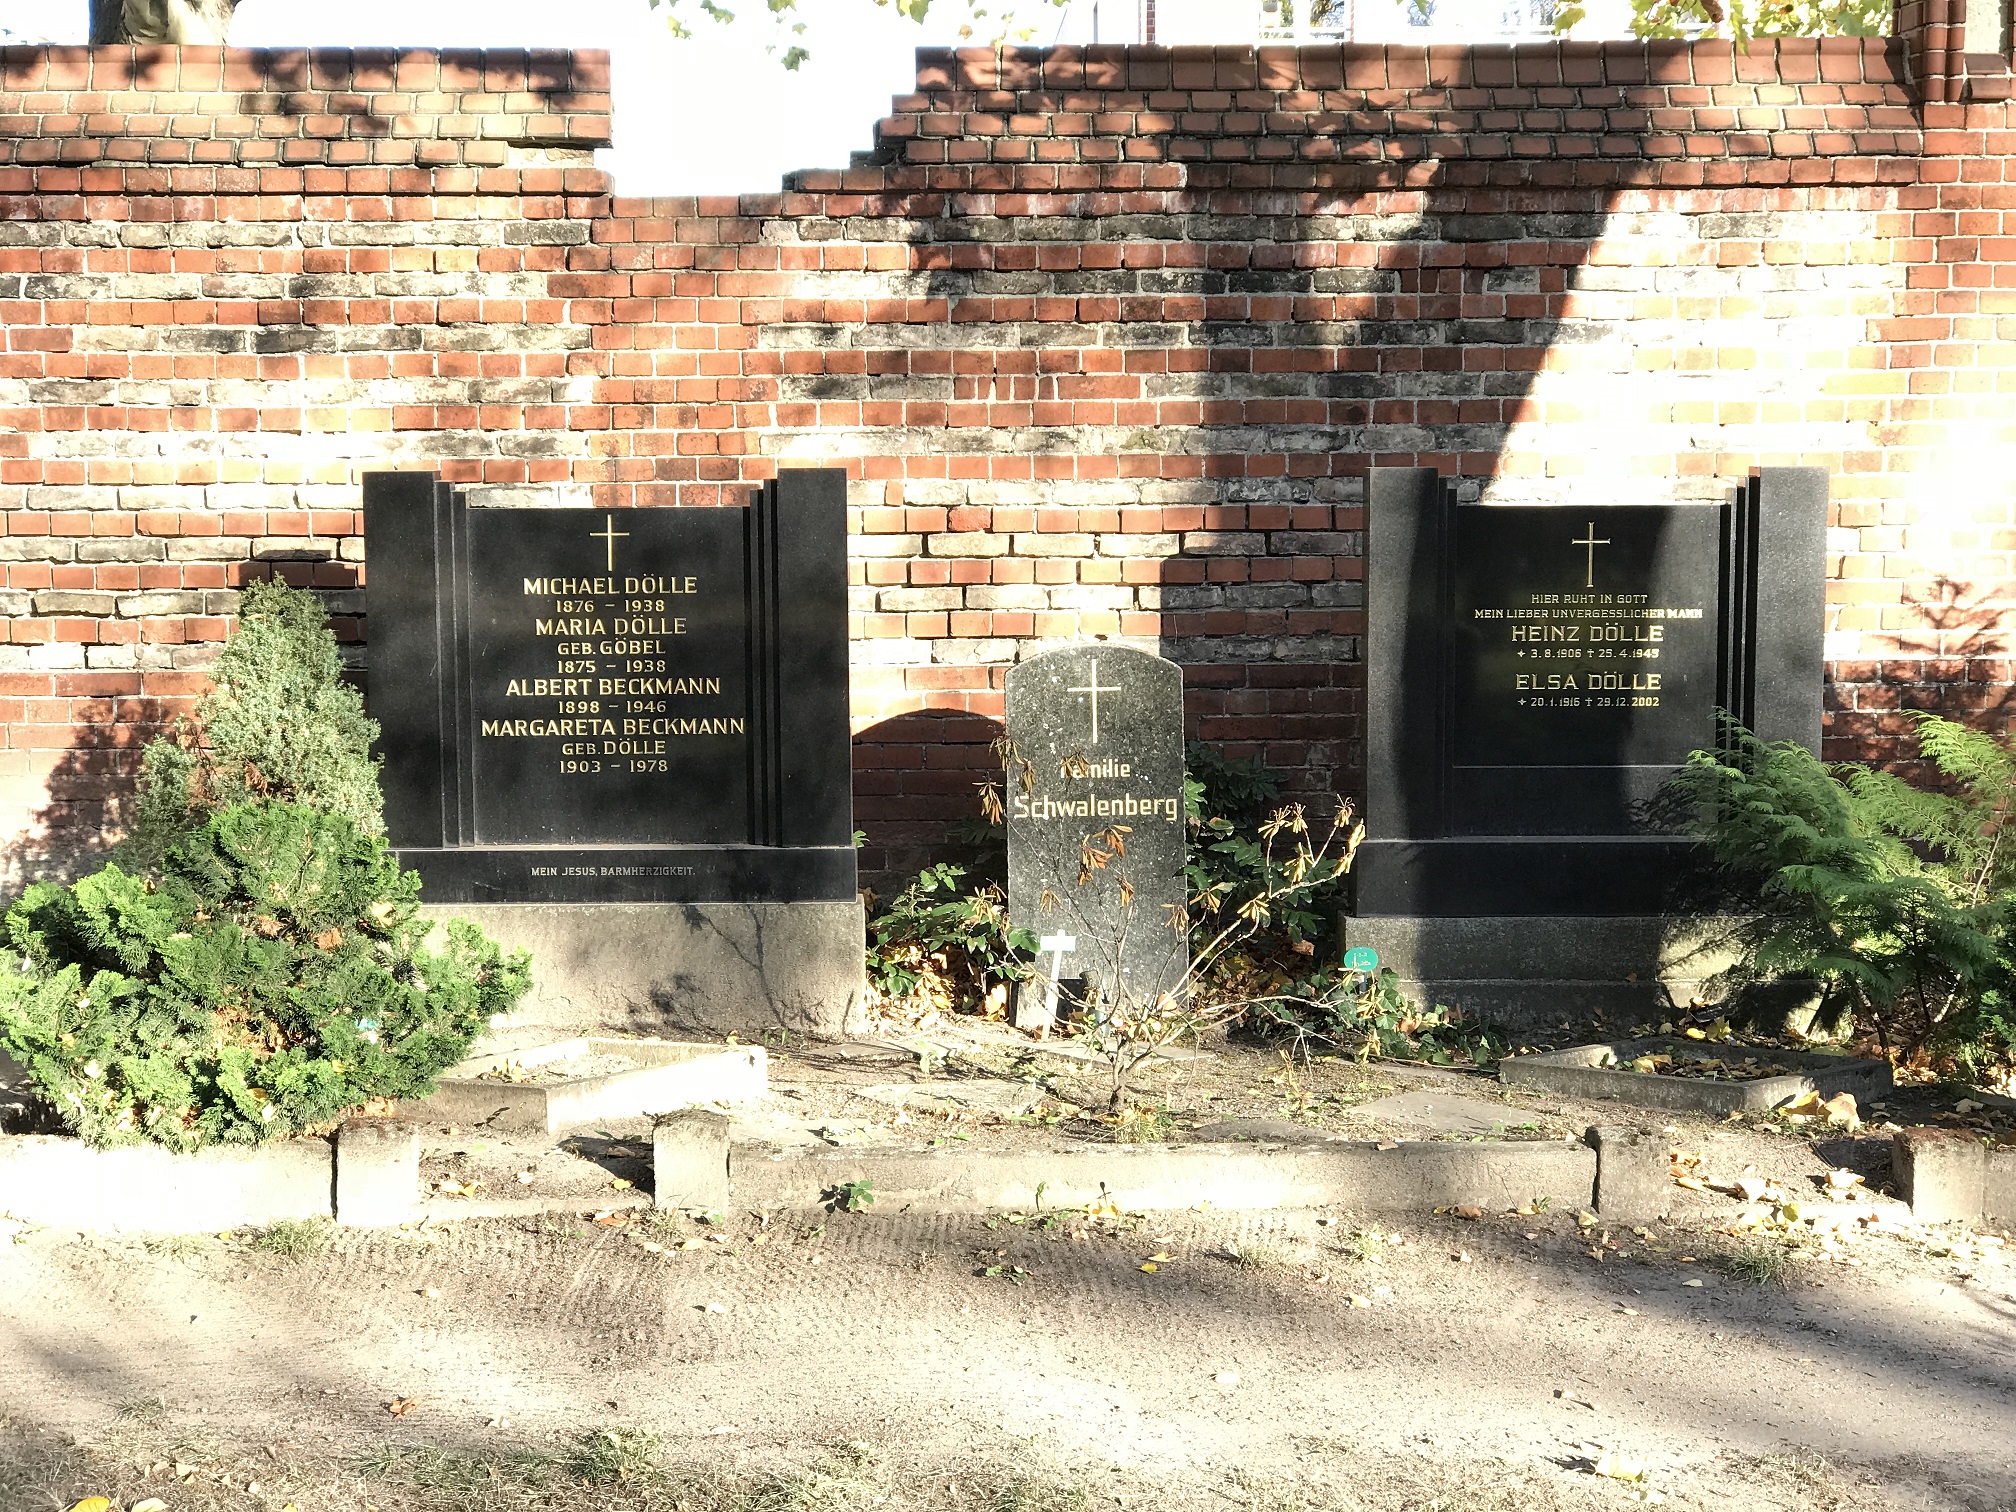 Grabstein Margaretha Beckmann, geb. Dölle, St. Hedwigs-Friedhof, Berlin-Weißensee